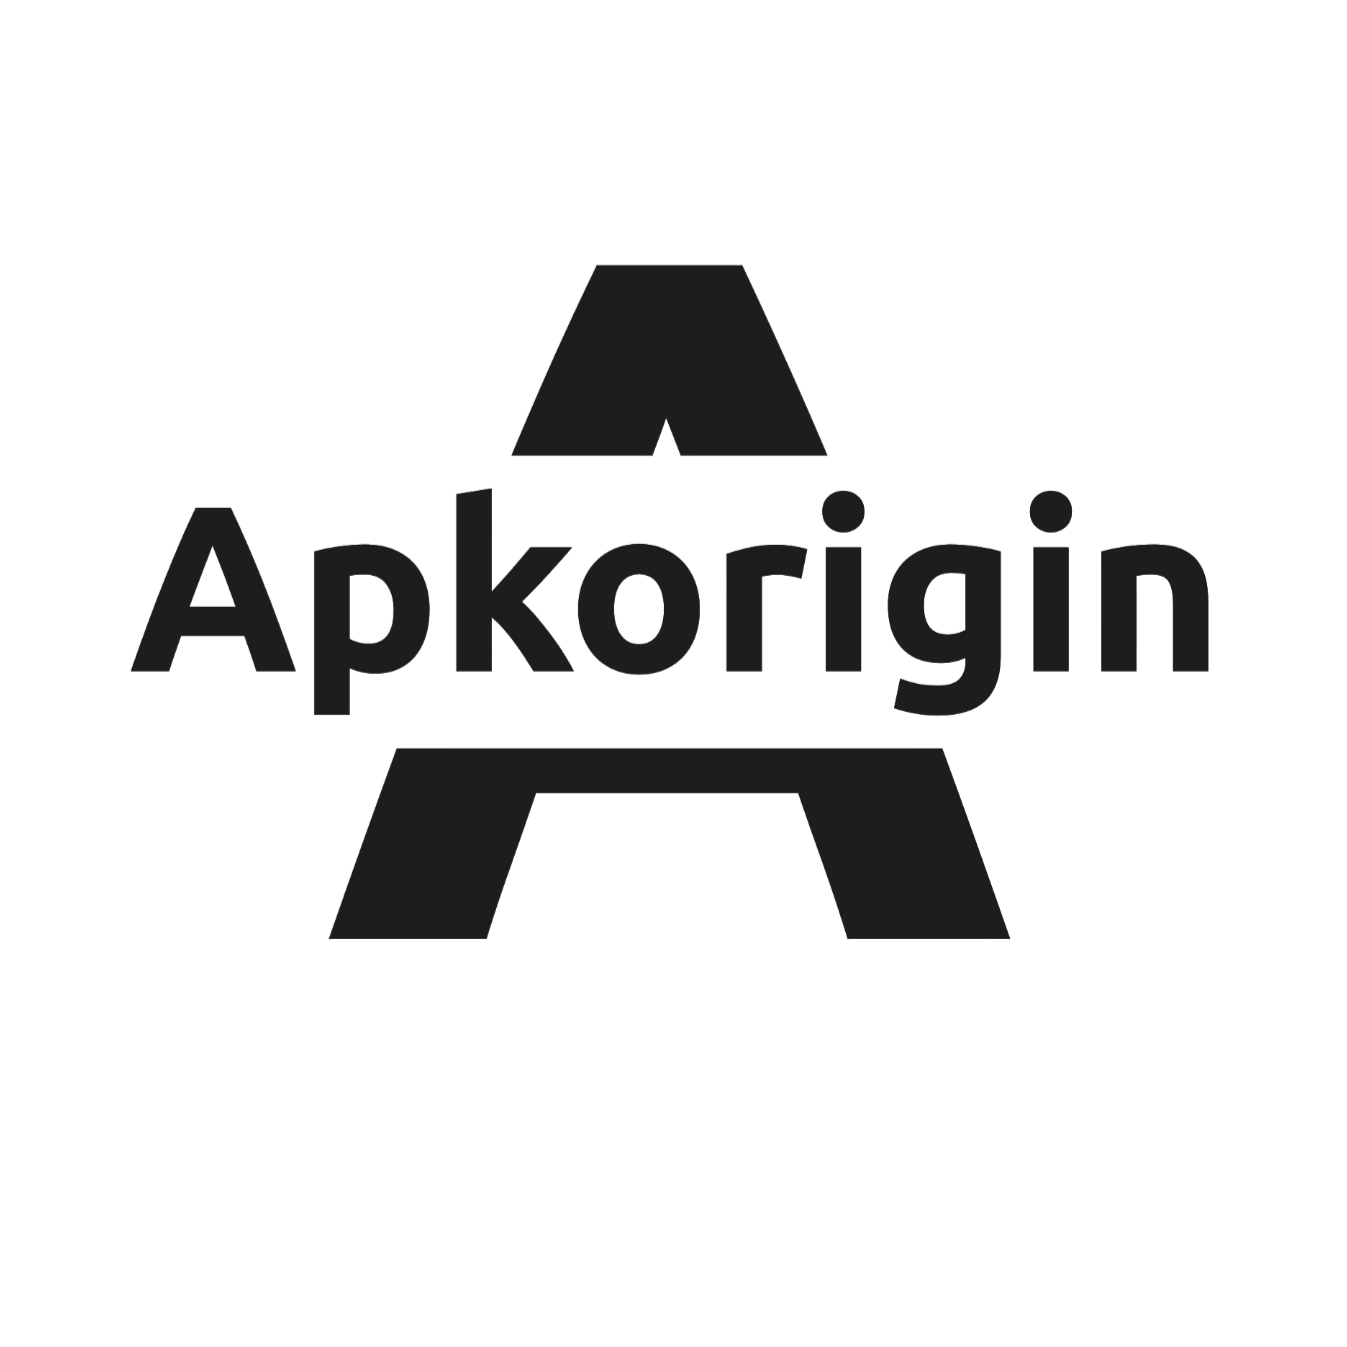 apkorigin.com